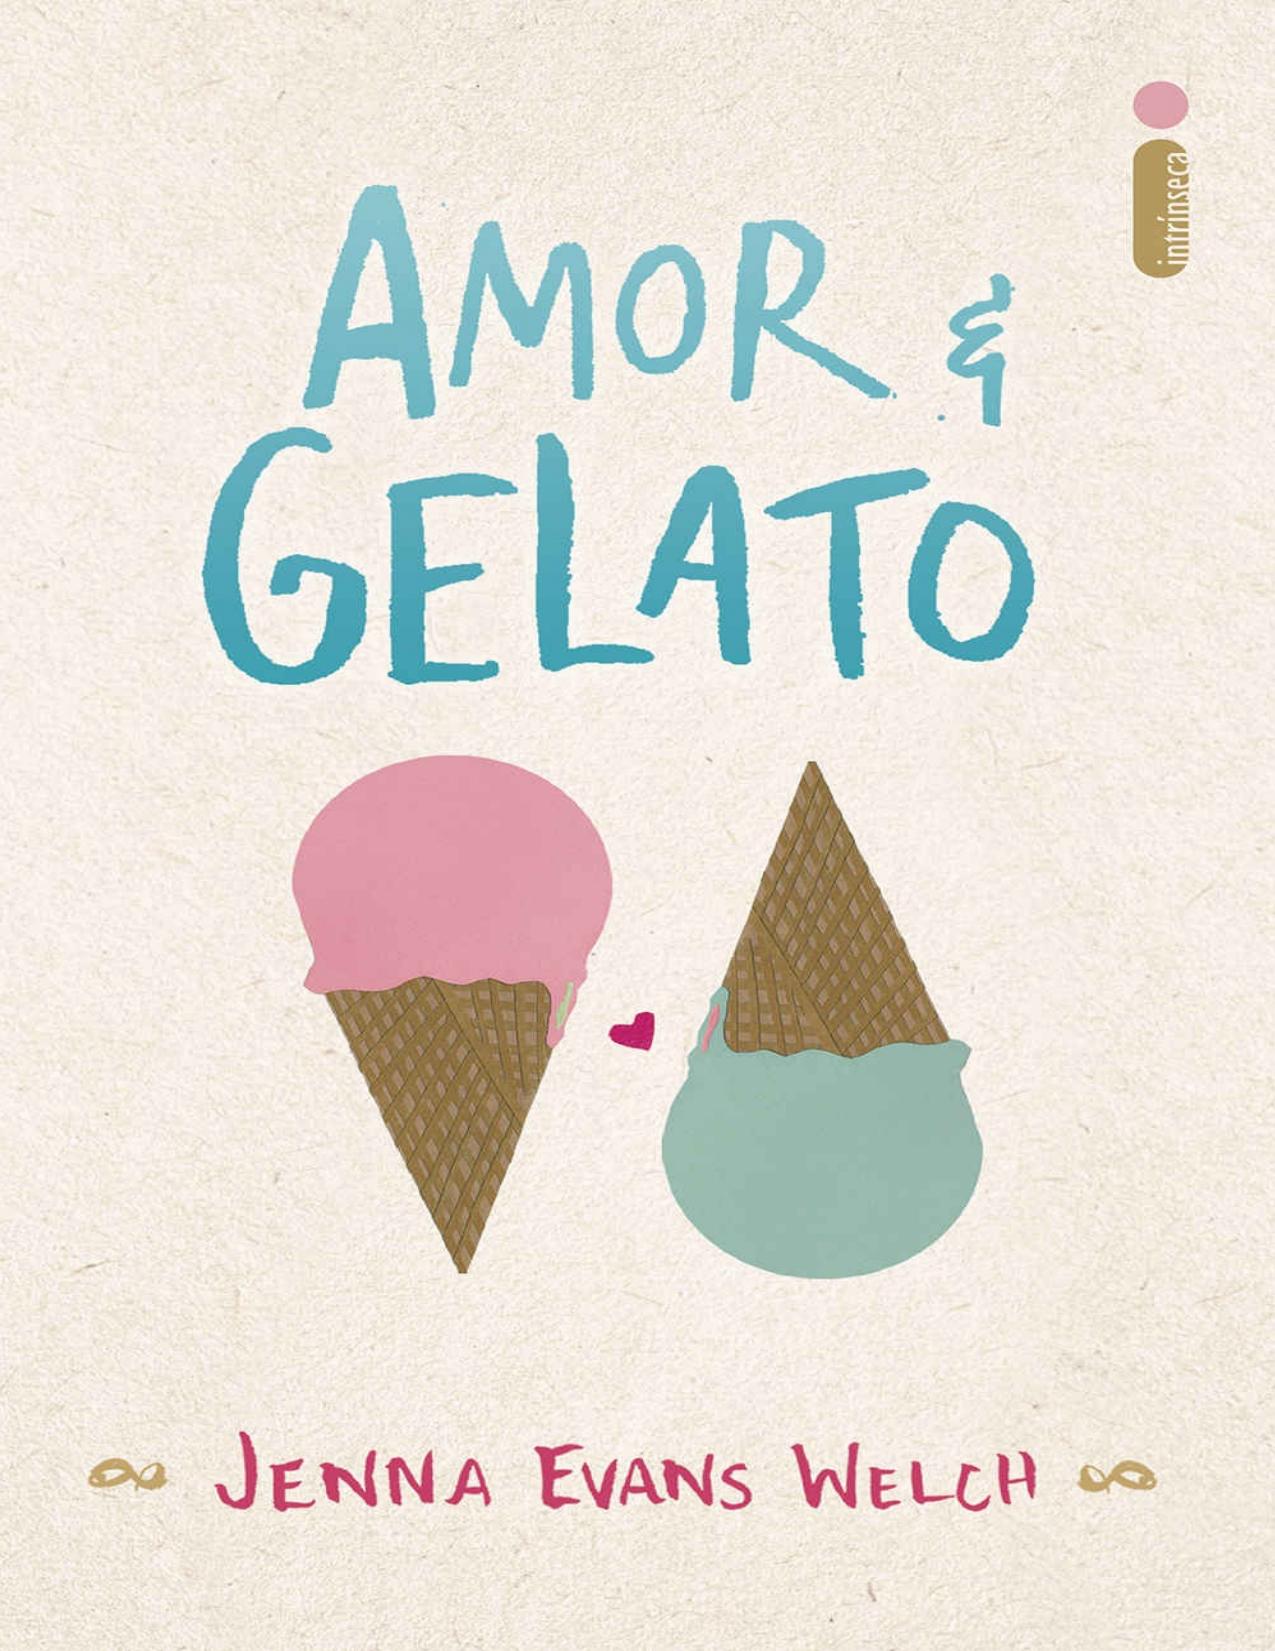 Amor &amp; gelato (Portuguese Edition)